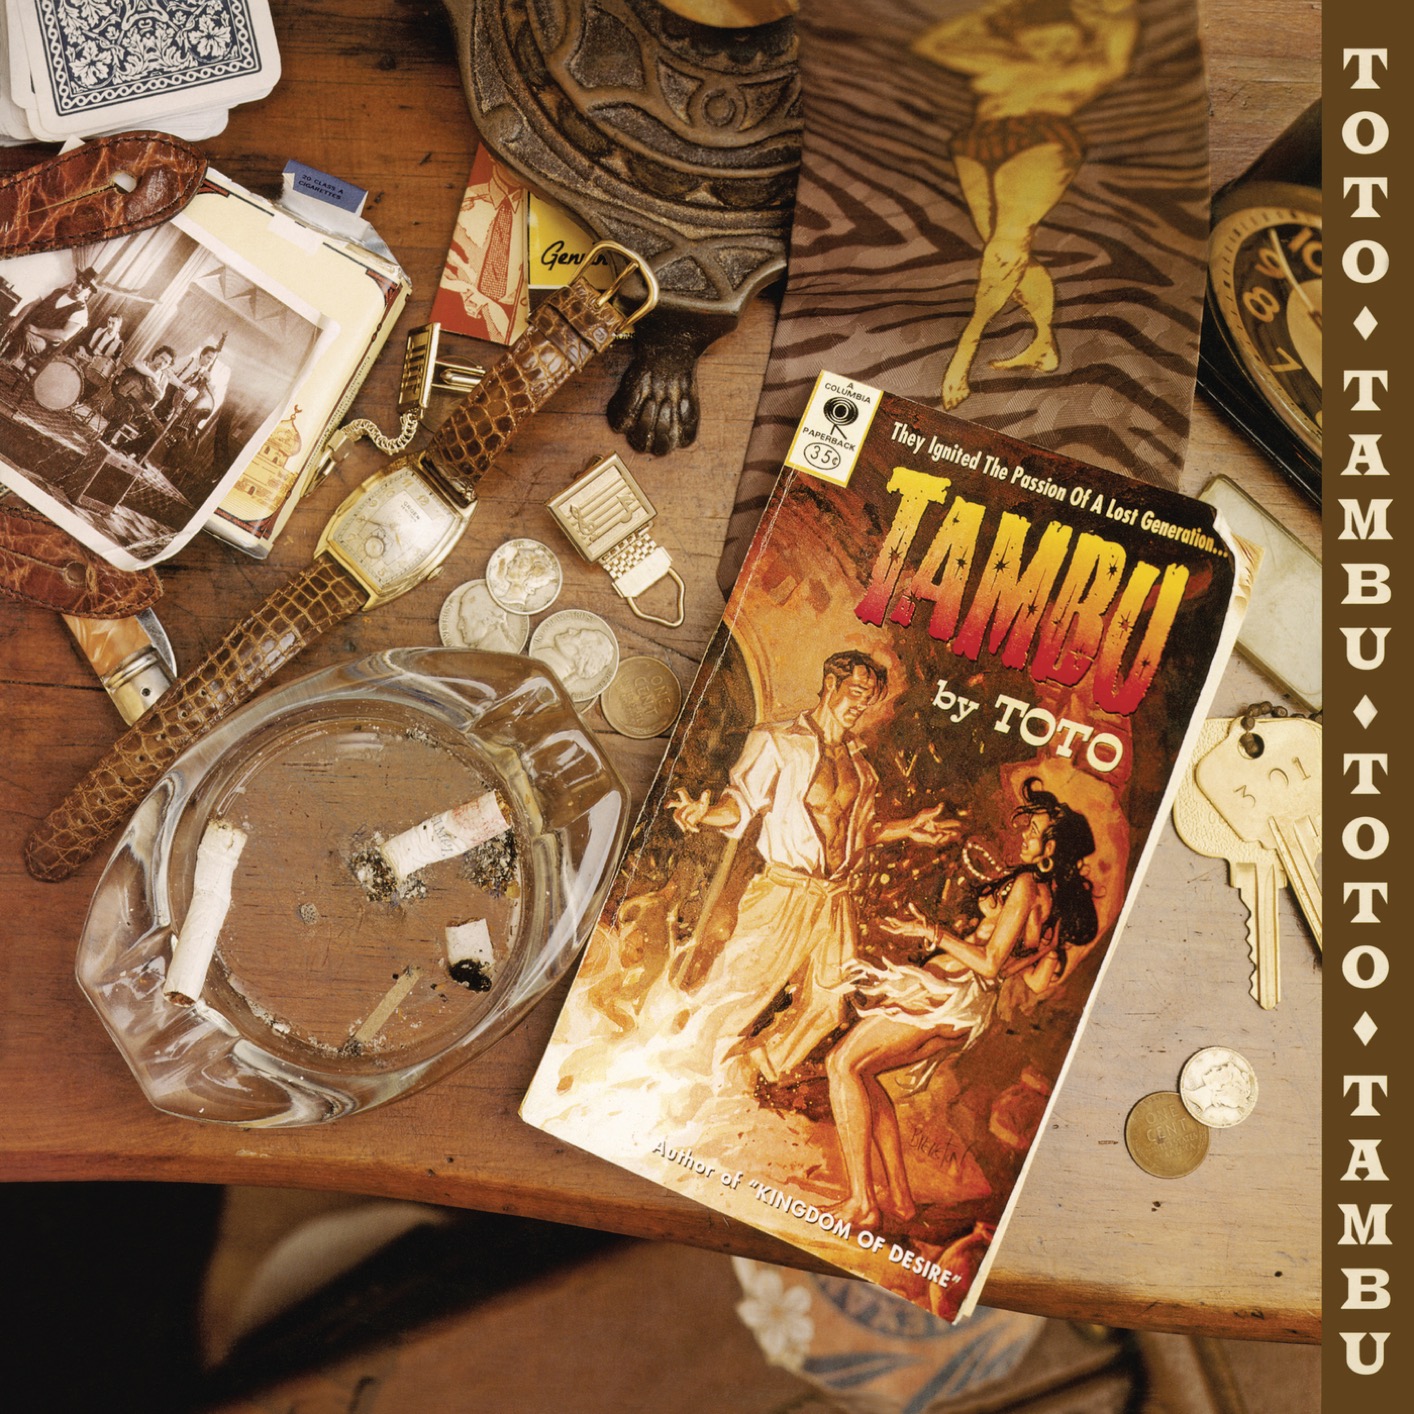 Toto – Tambu (Remastered) (1995/2020) [FLAC 24bit/192kHz]